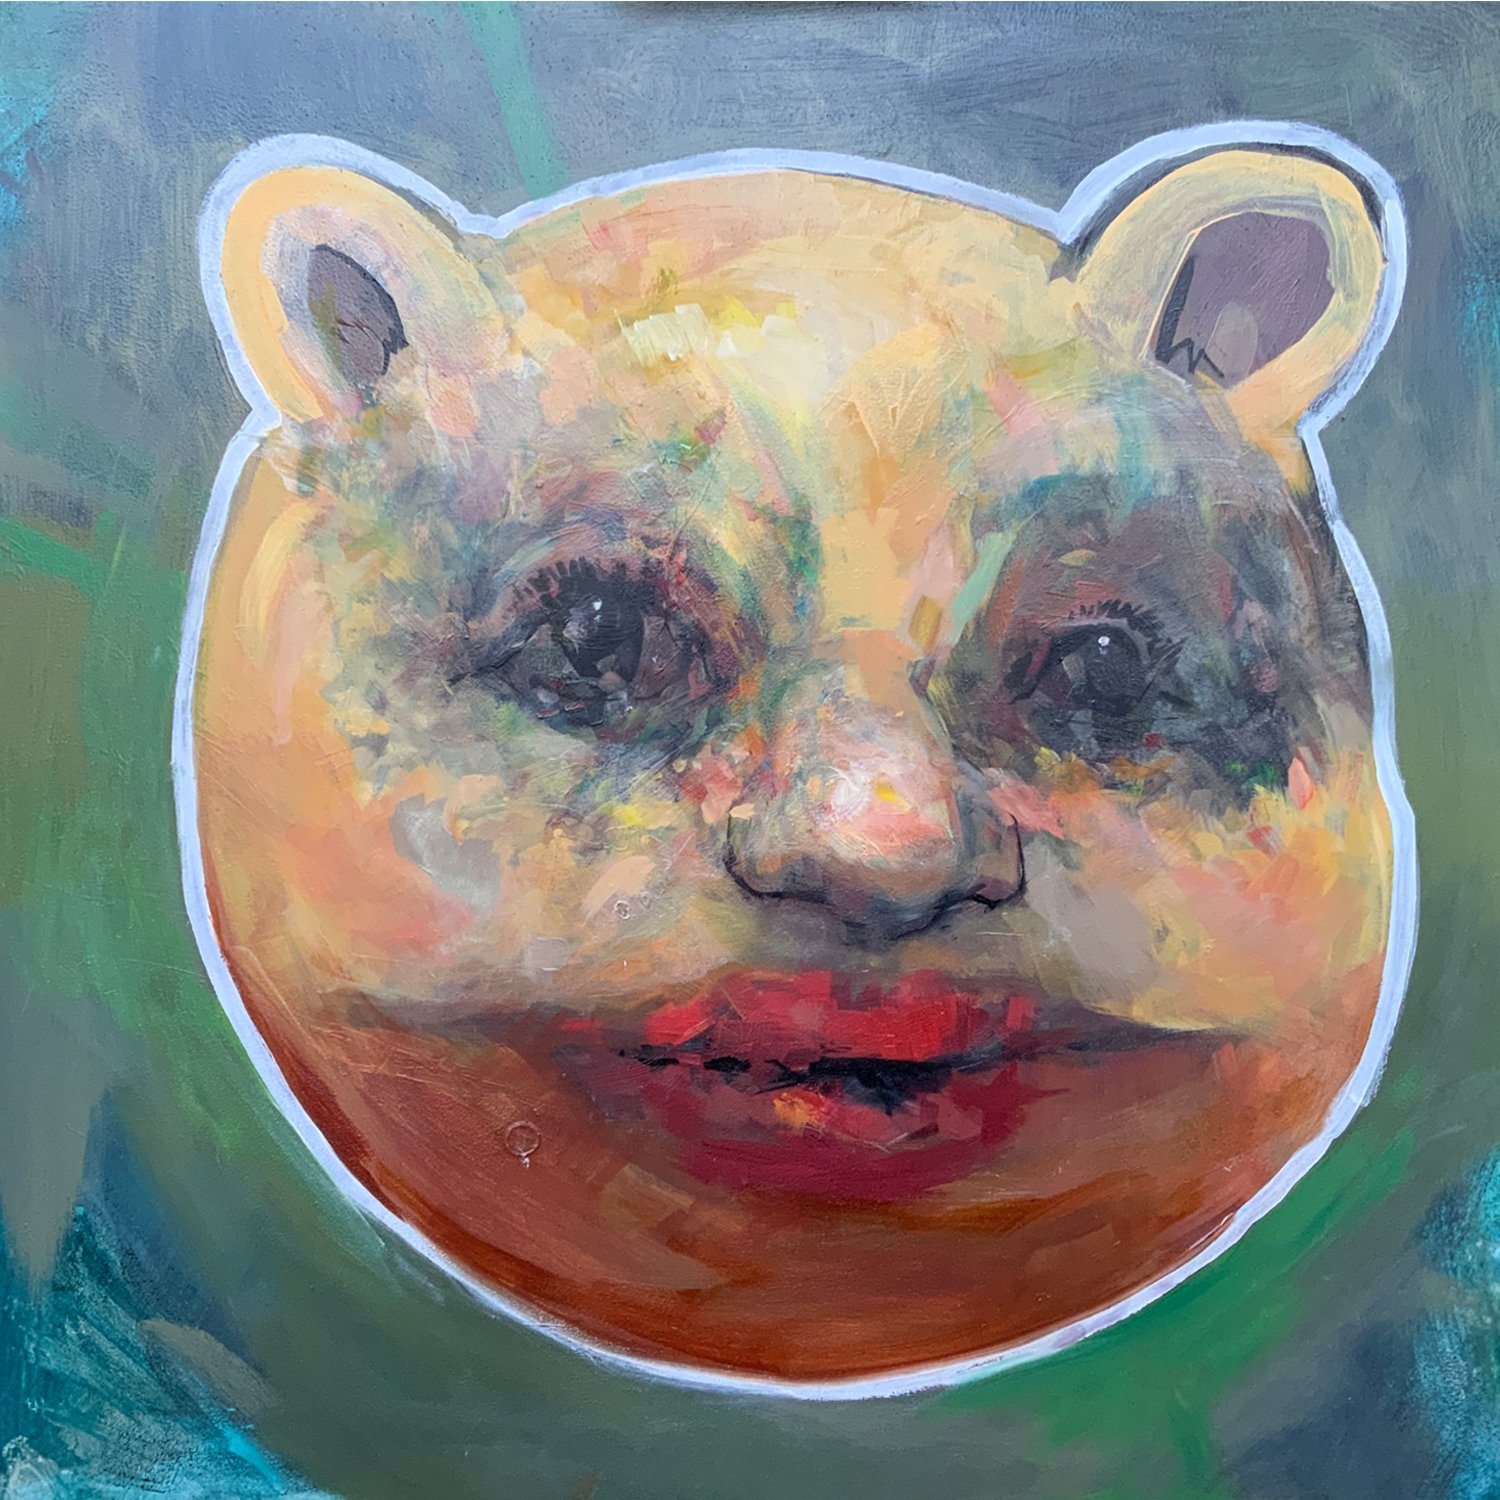  Bear 1, 2021, Acrylic and oil on Panel, 36 x 36” 